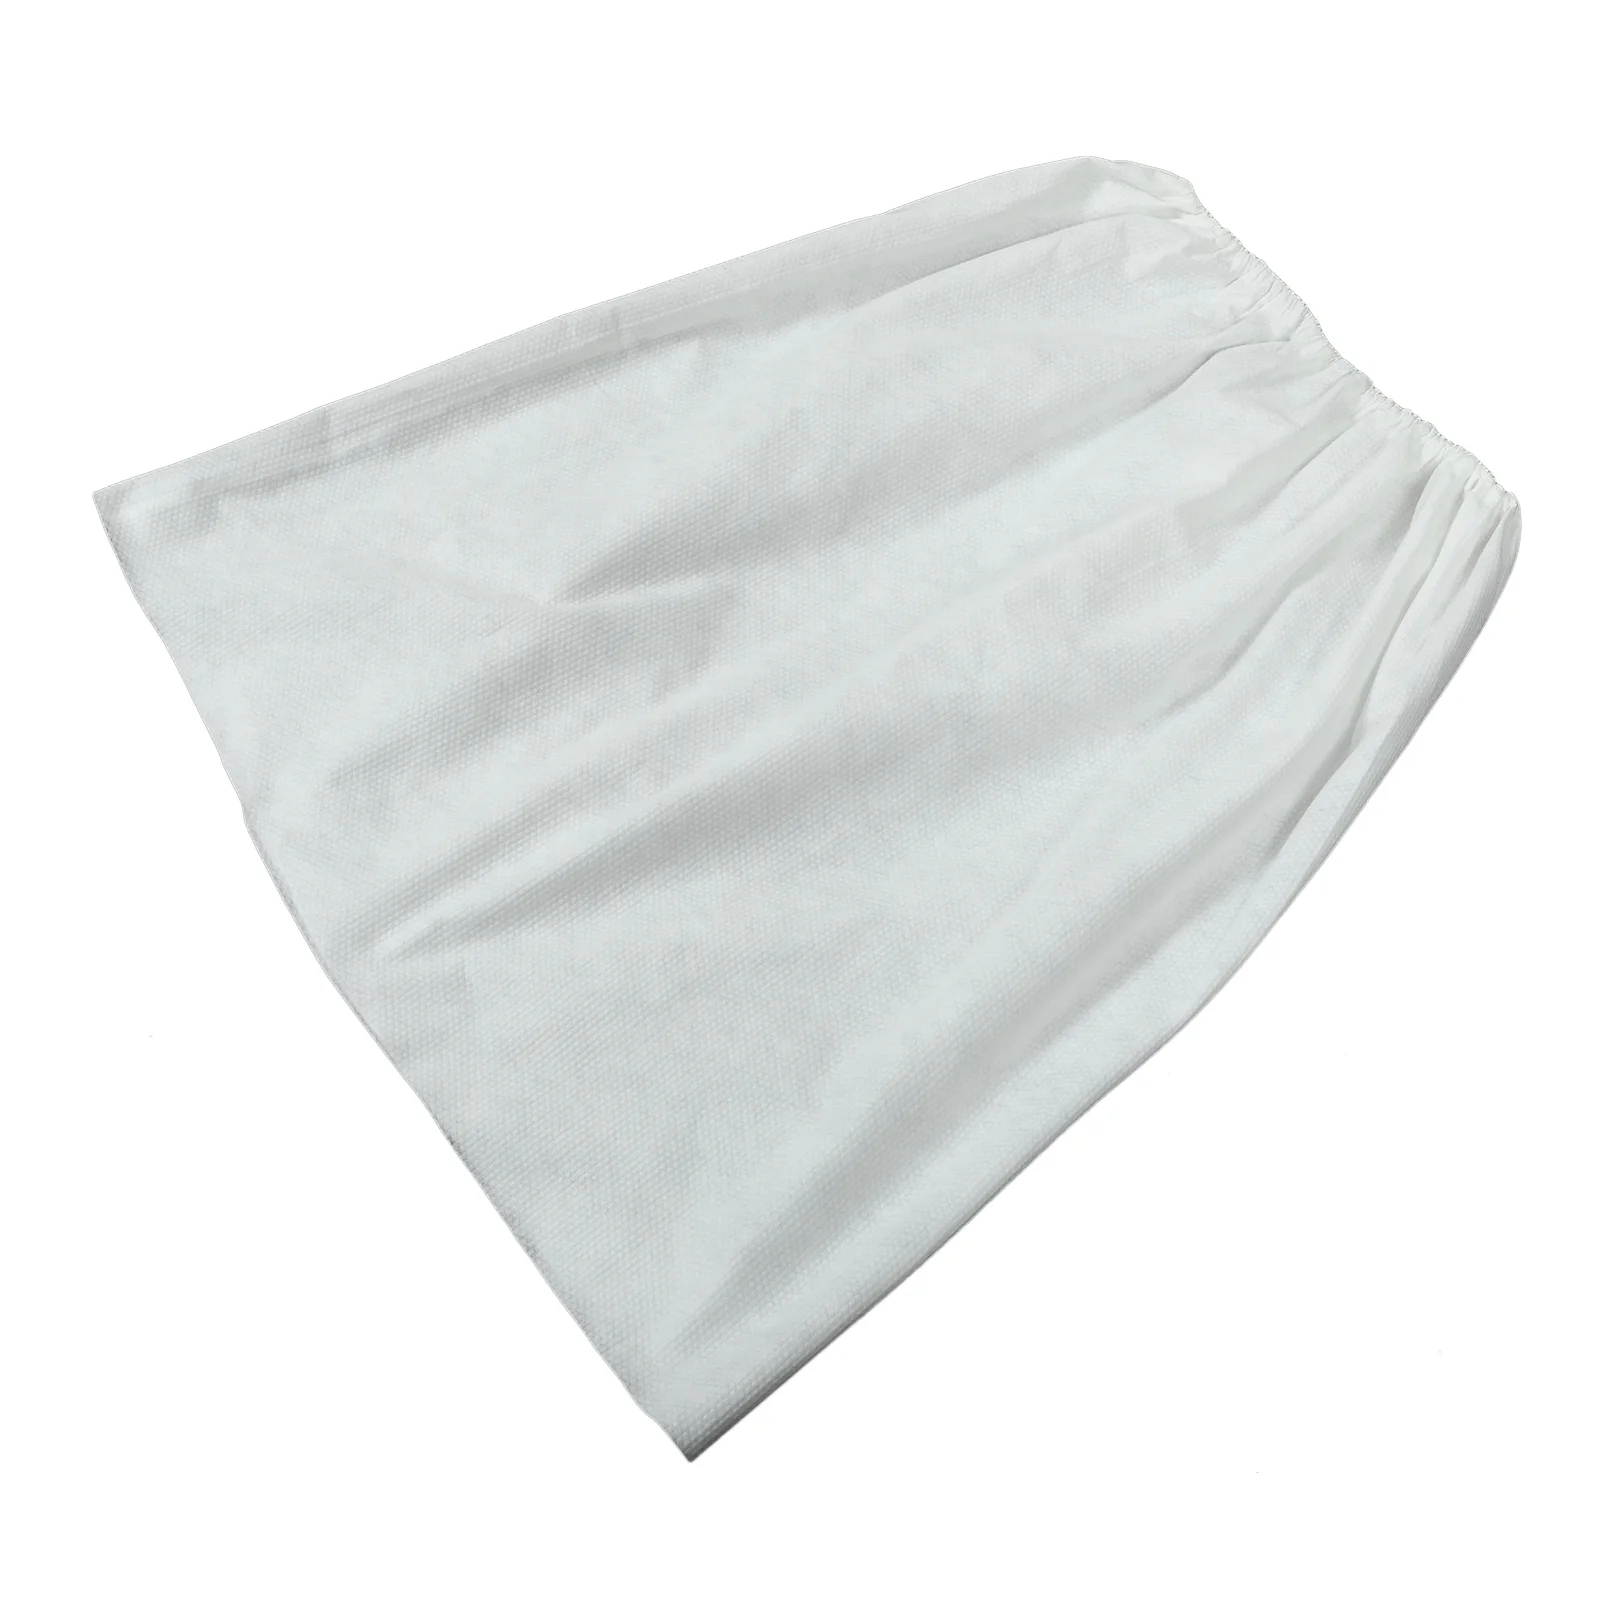 

Хлопковая шаль, воротник, халат, одноразовая банная юбка, полотенце, надежный утолщенный Халат